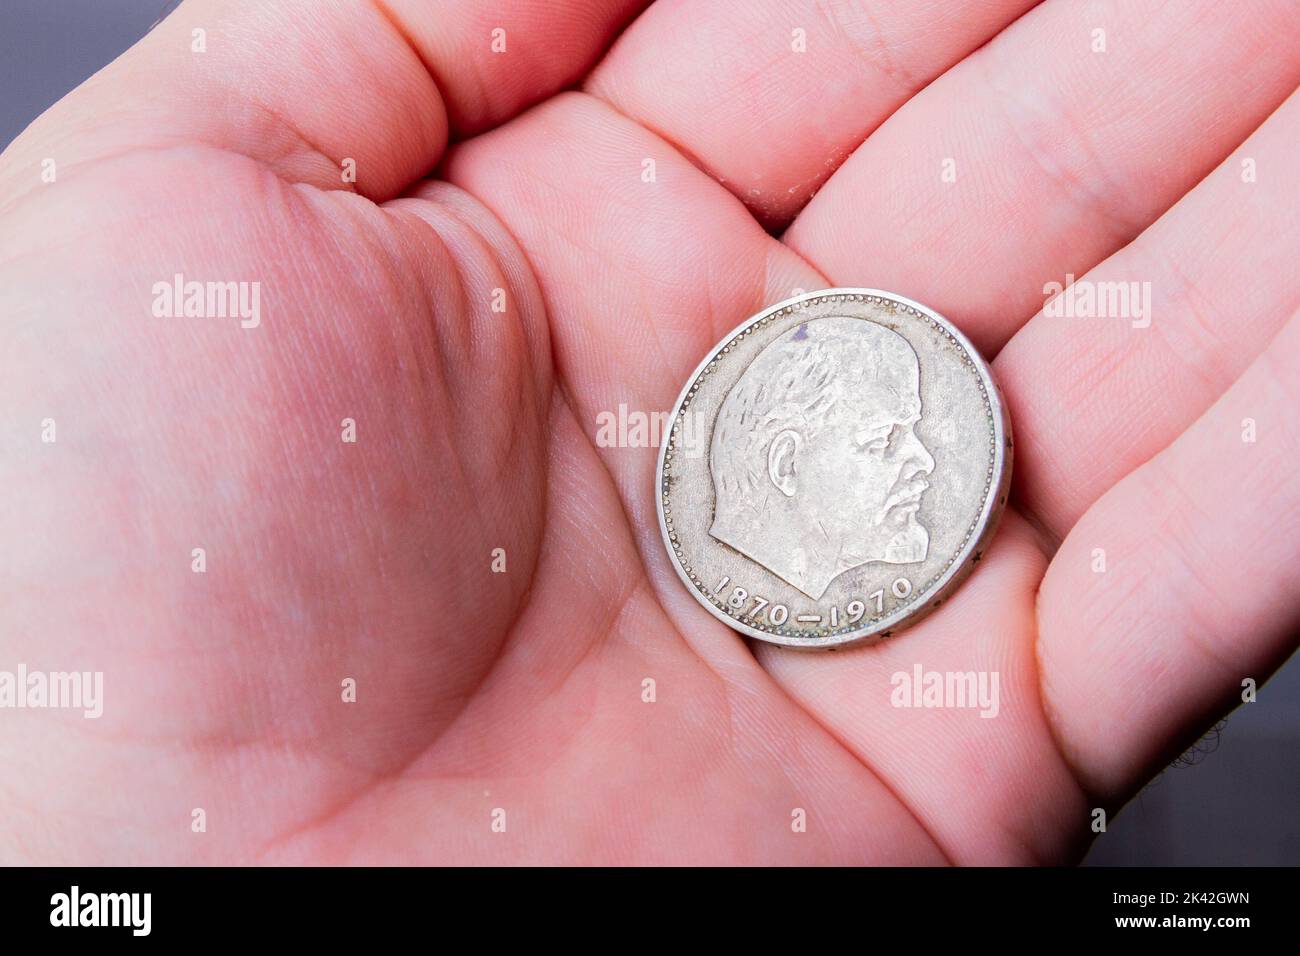 Sowjetische Münze mit Lenin. Zahlung in Rubel. Verkauf von Rubel. Die russische Währung wird an der Börse stärker. Stockfoto